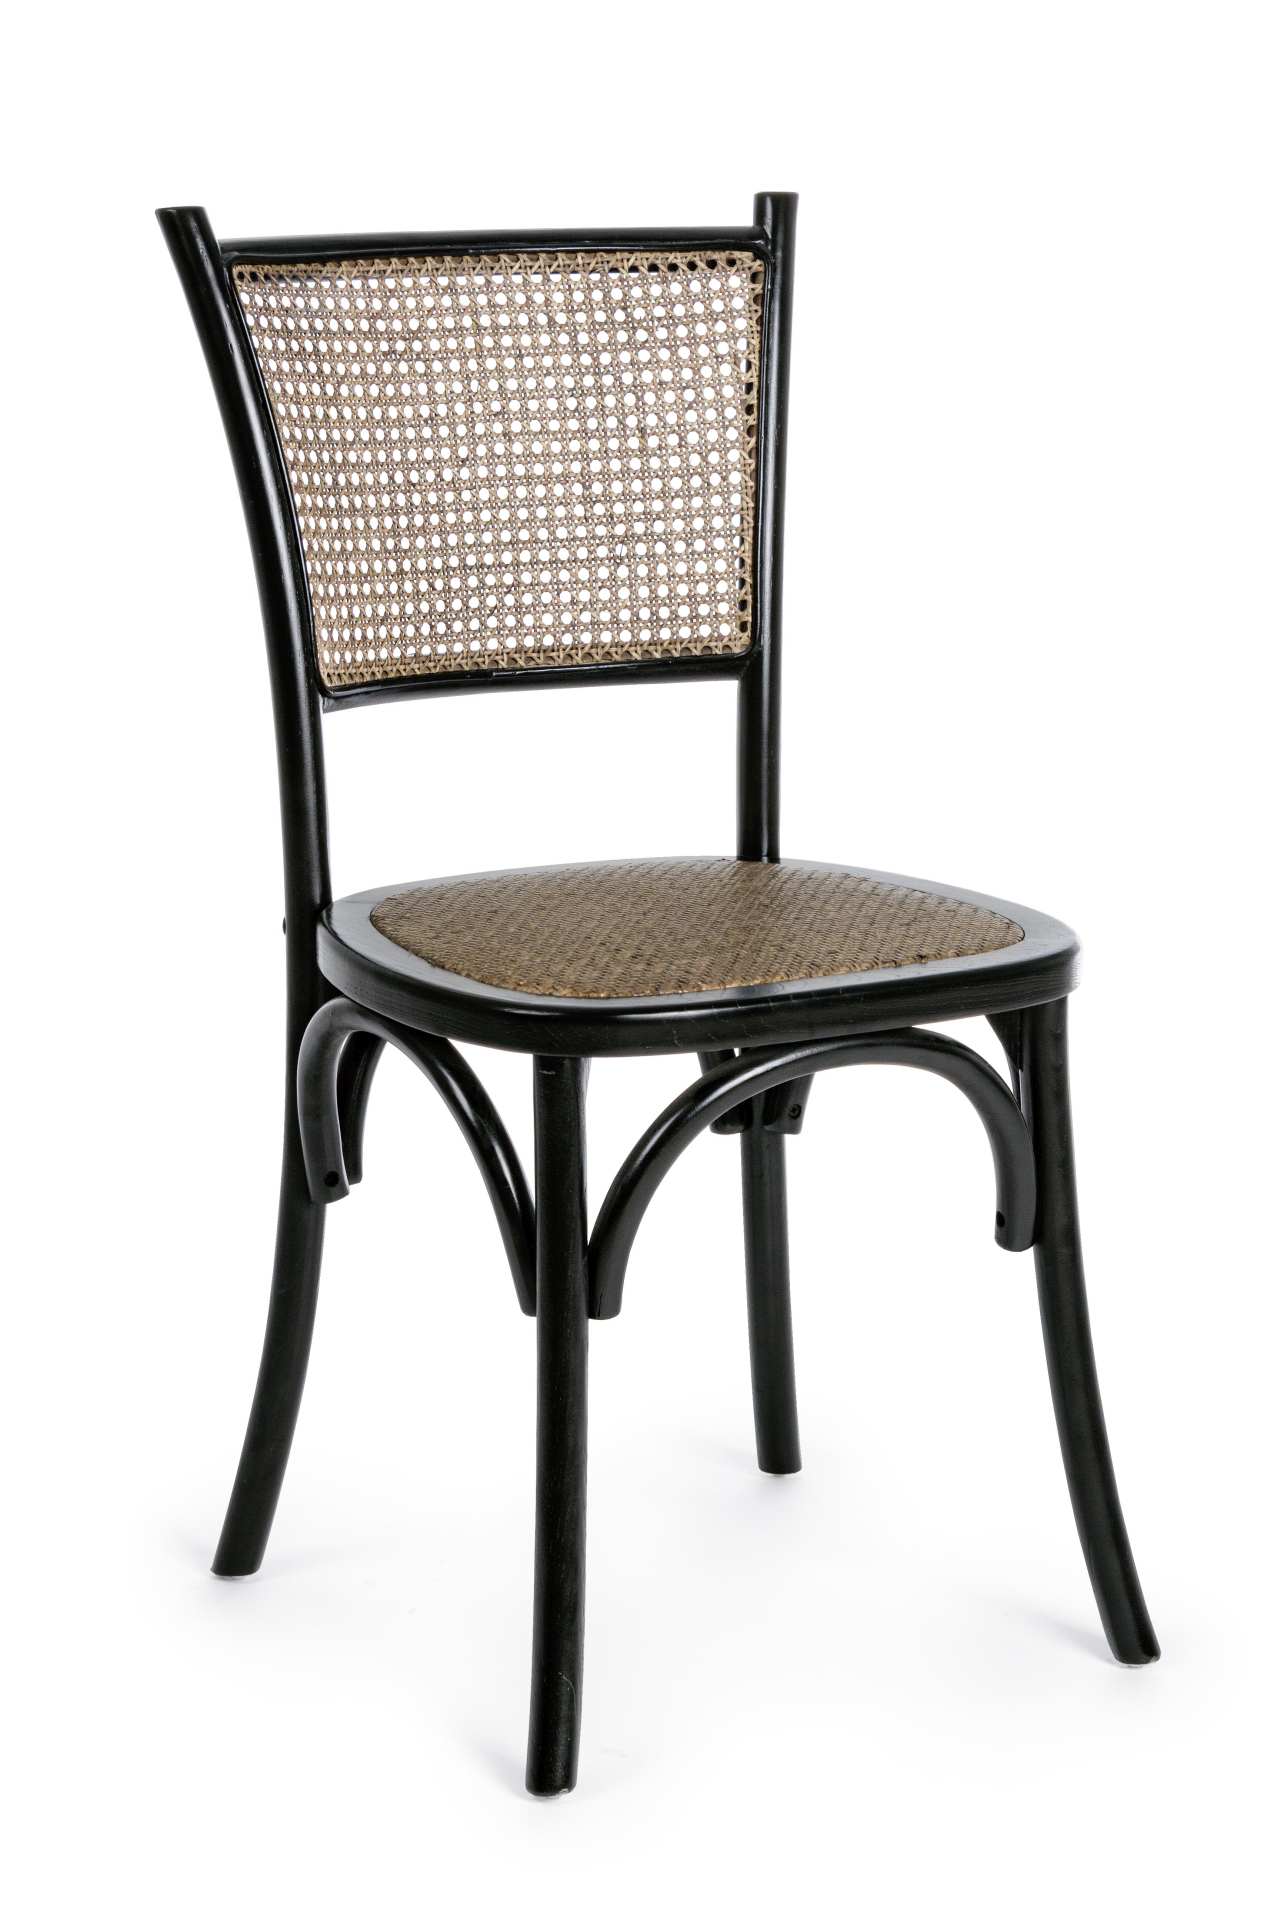 Der Stuhl Carrel überzeugt mit seinem klassischen Design. Gefertigt wurde der Stuhl aus Ulmenholz, welches einen schwarzen Farbton besitzt. Die Sitz- und Rückenfläche sind aus Rattan. Die Sitzhöhe beträgt 46 cm.